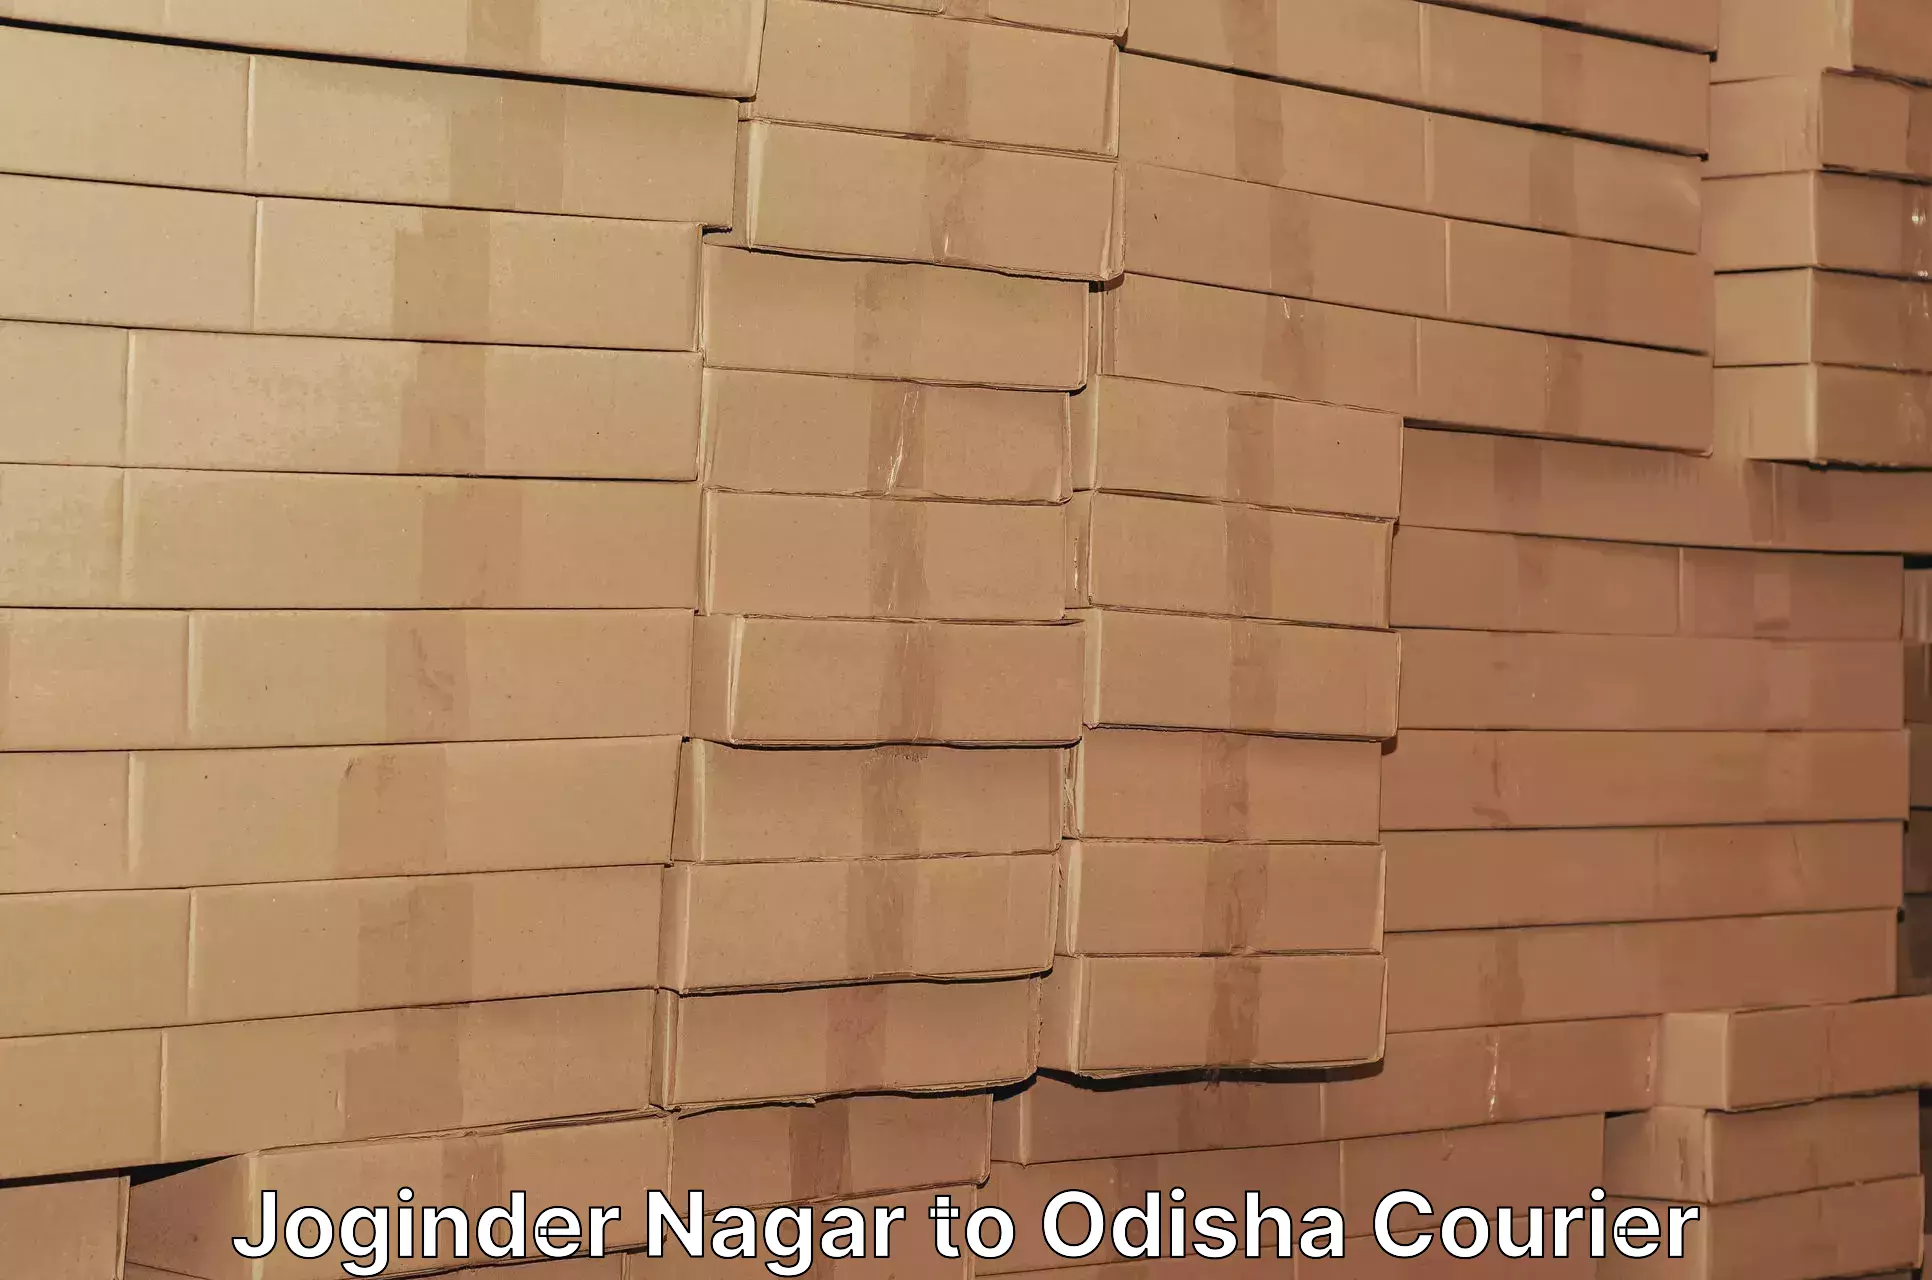 Express courier capabilities Joginder Nagar to Subdega